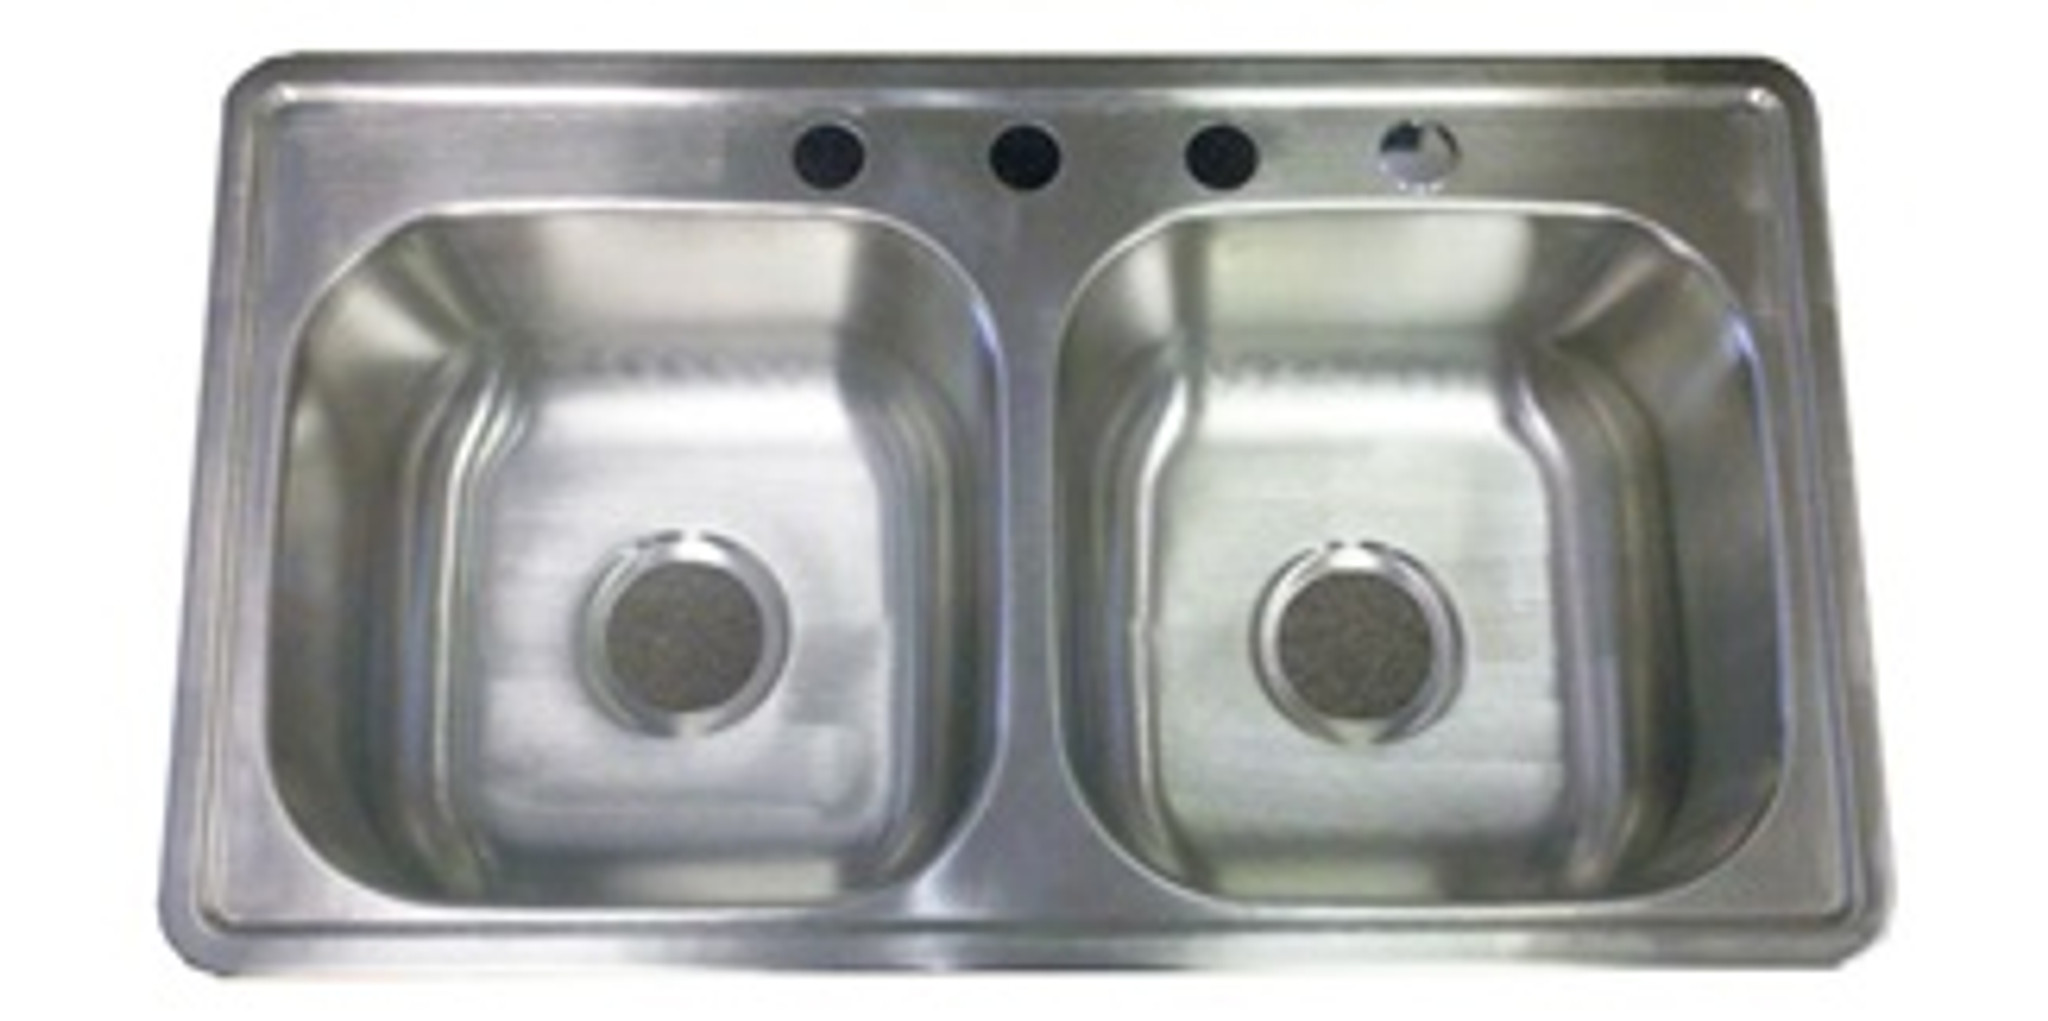 8 deep stainless steel kitchen sink